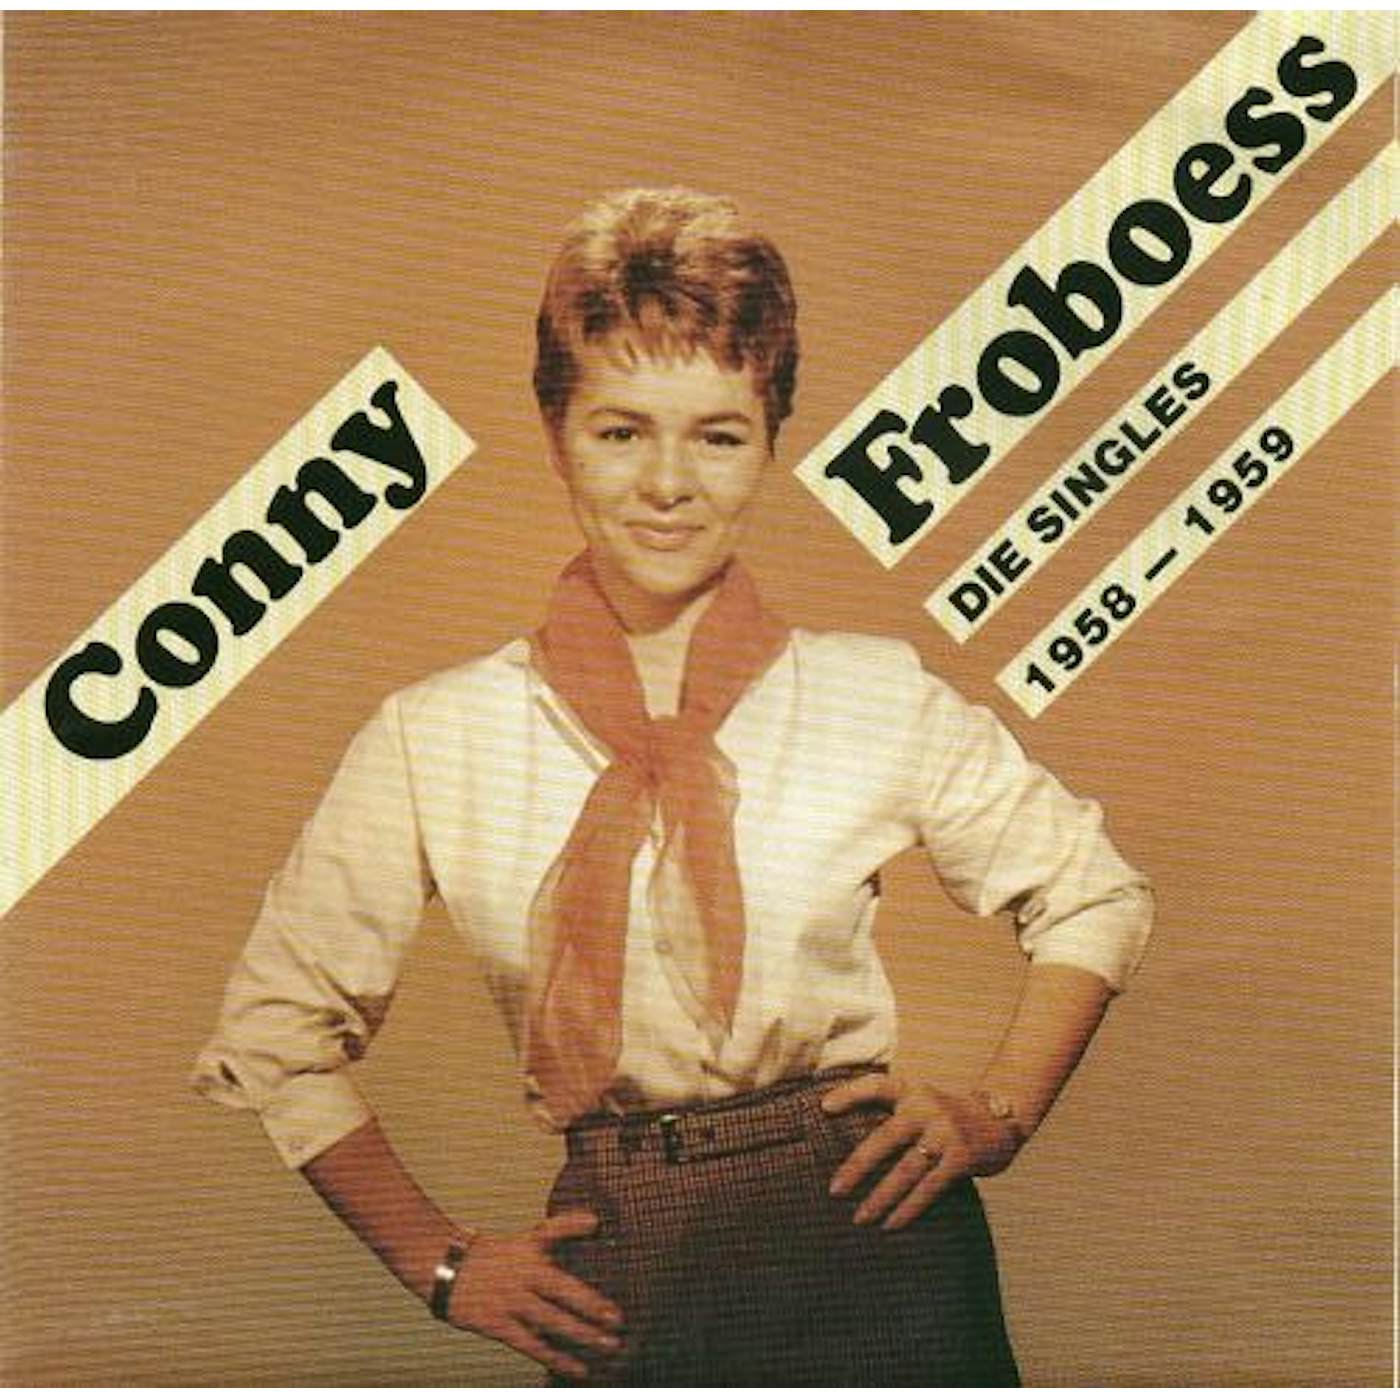 Conny Froboess DIE SINGLES 1958-1959 CD